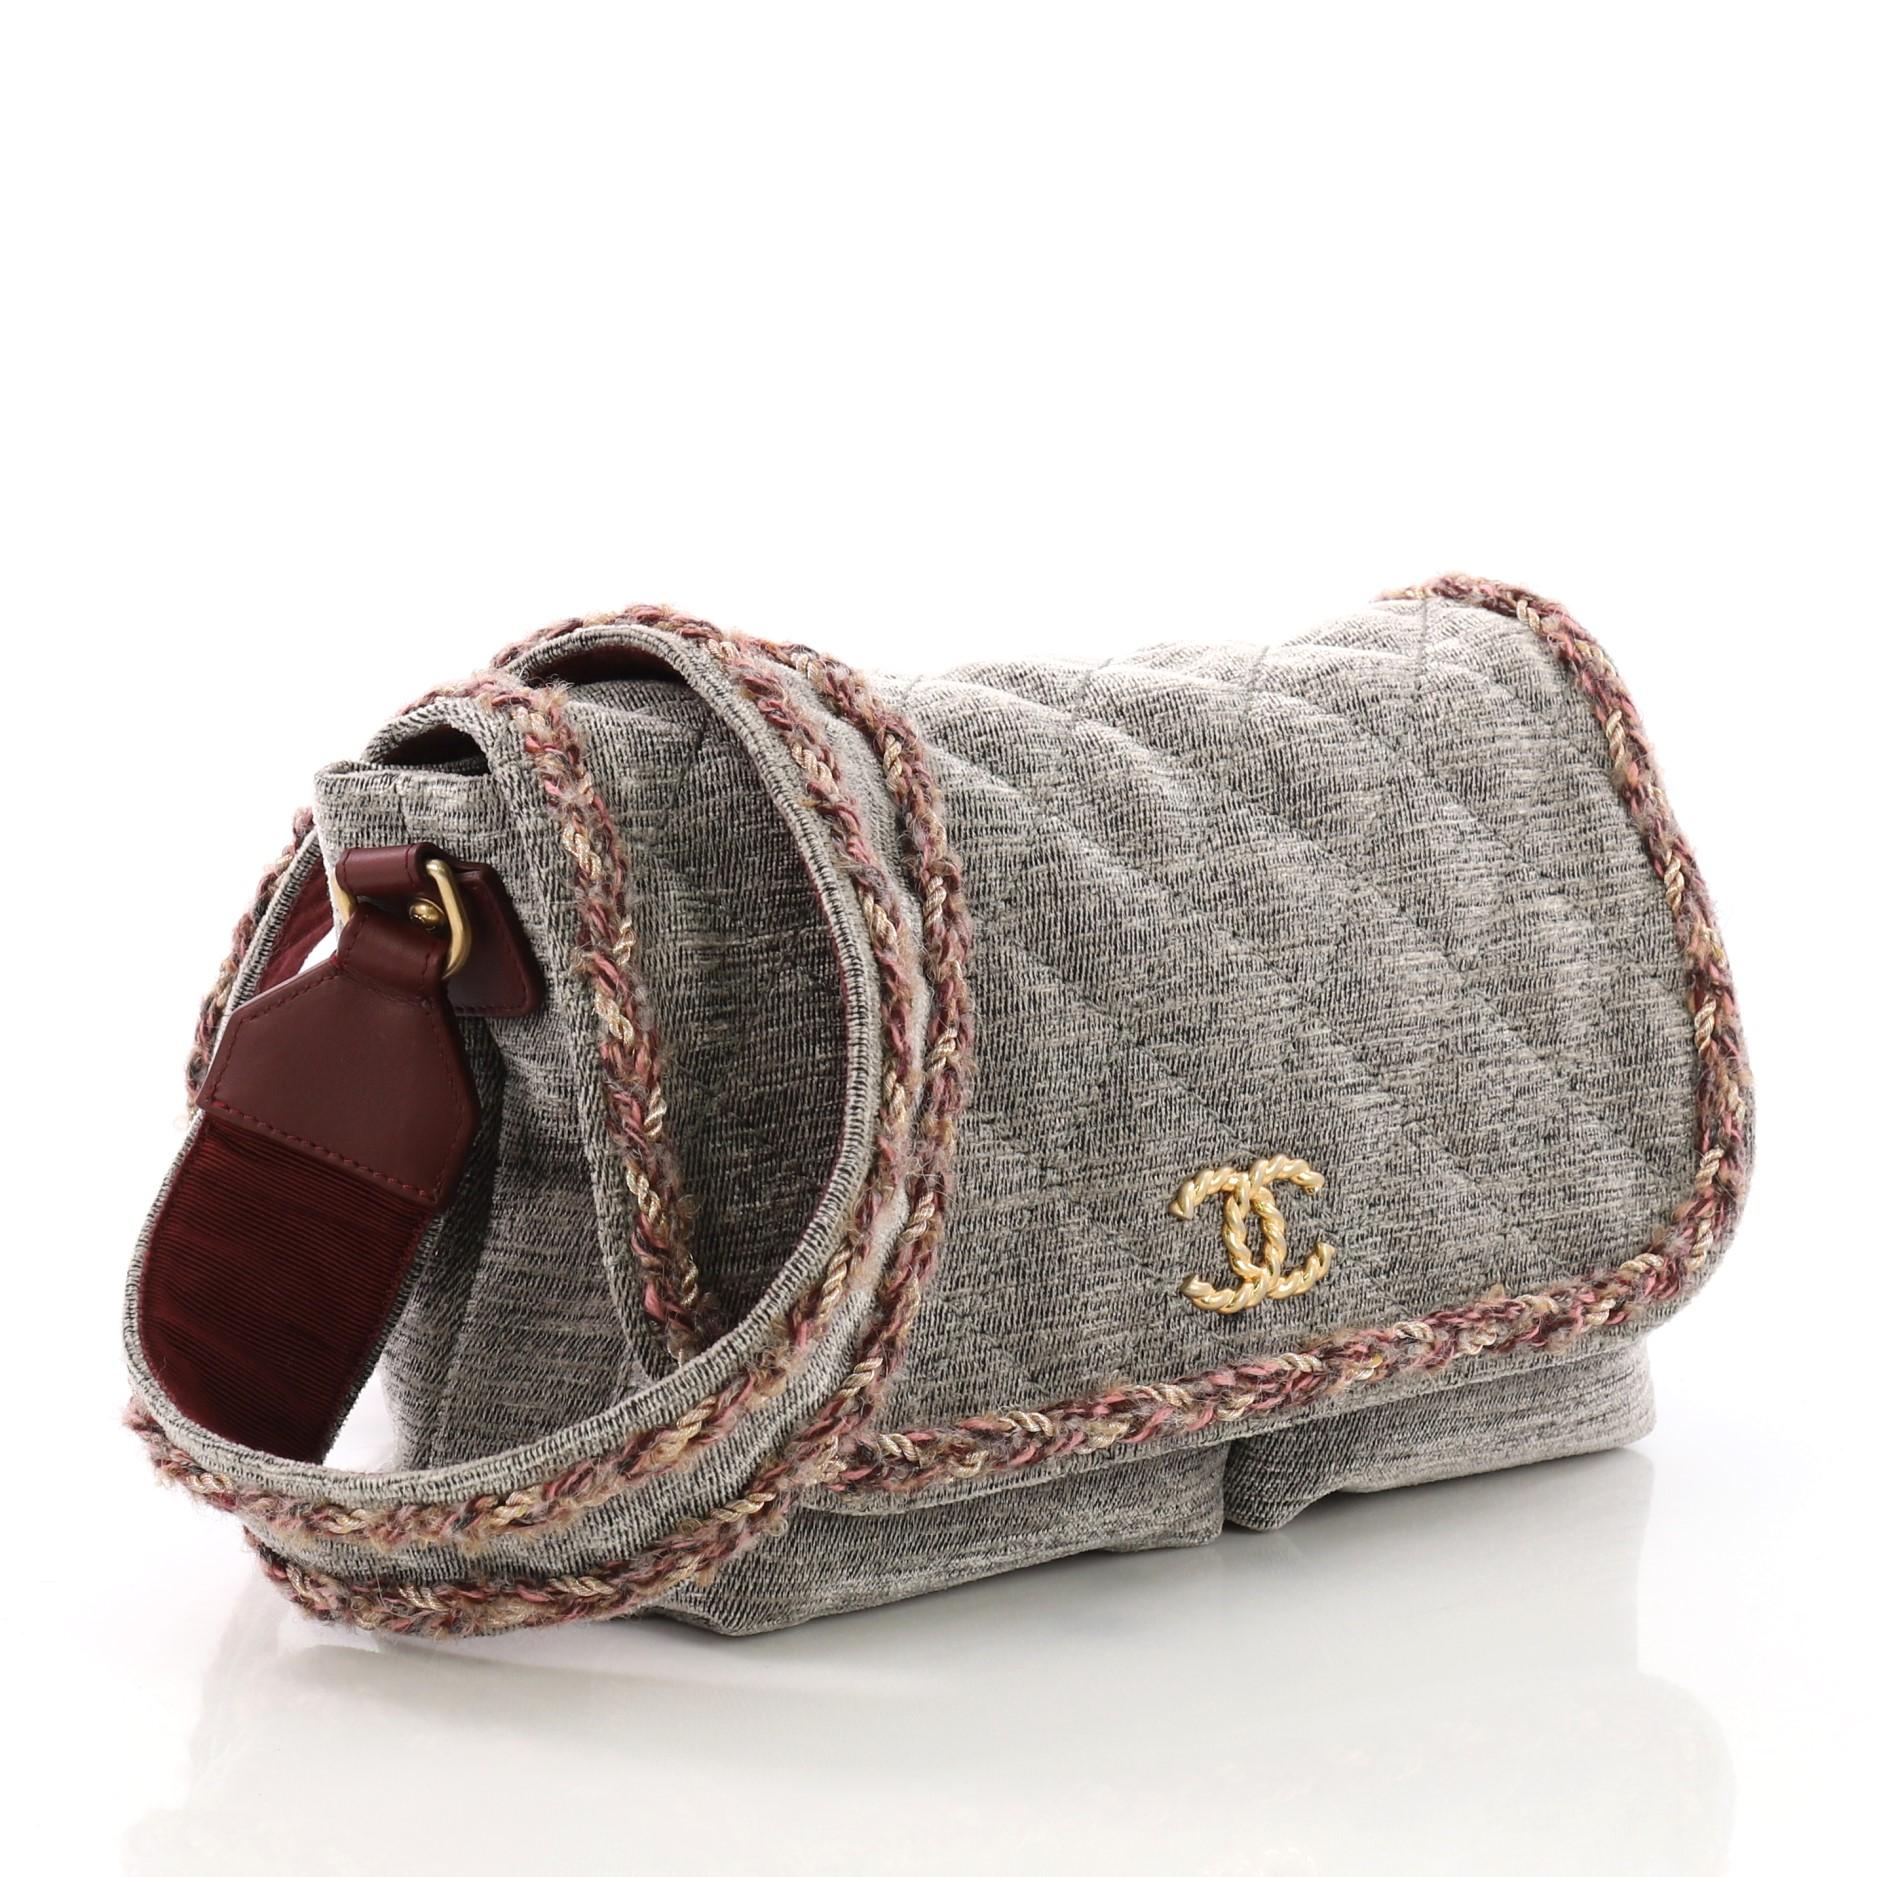 wool handbag velvet bag